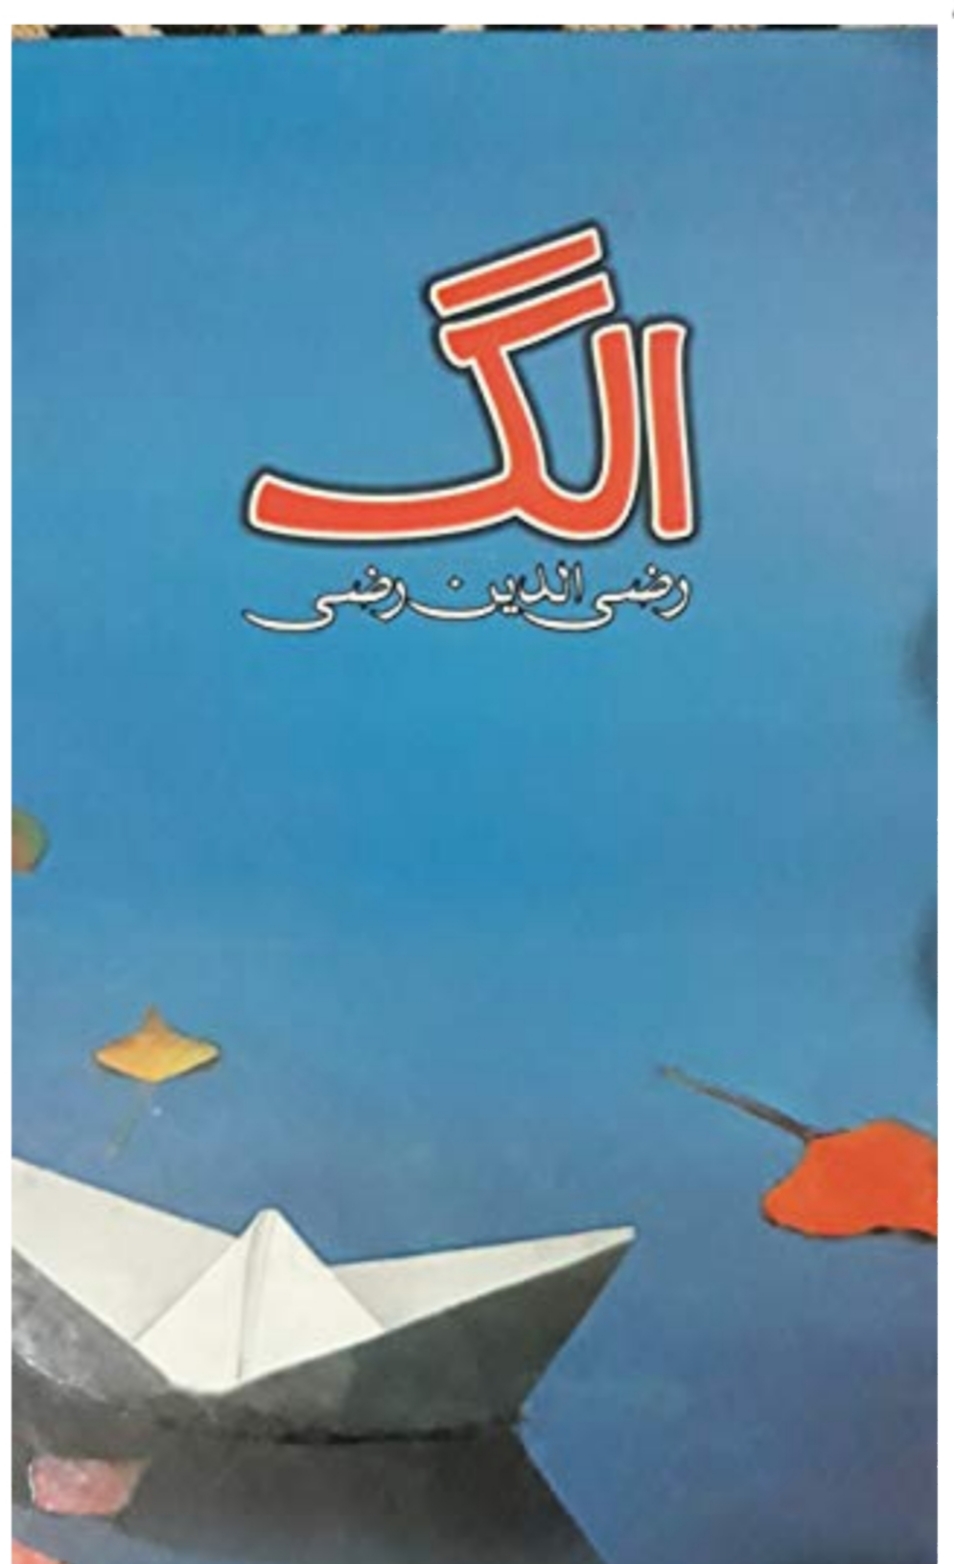 Book review : Allag by Razi uddin Razi